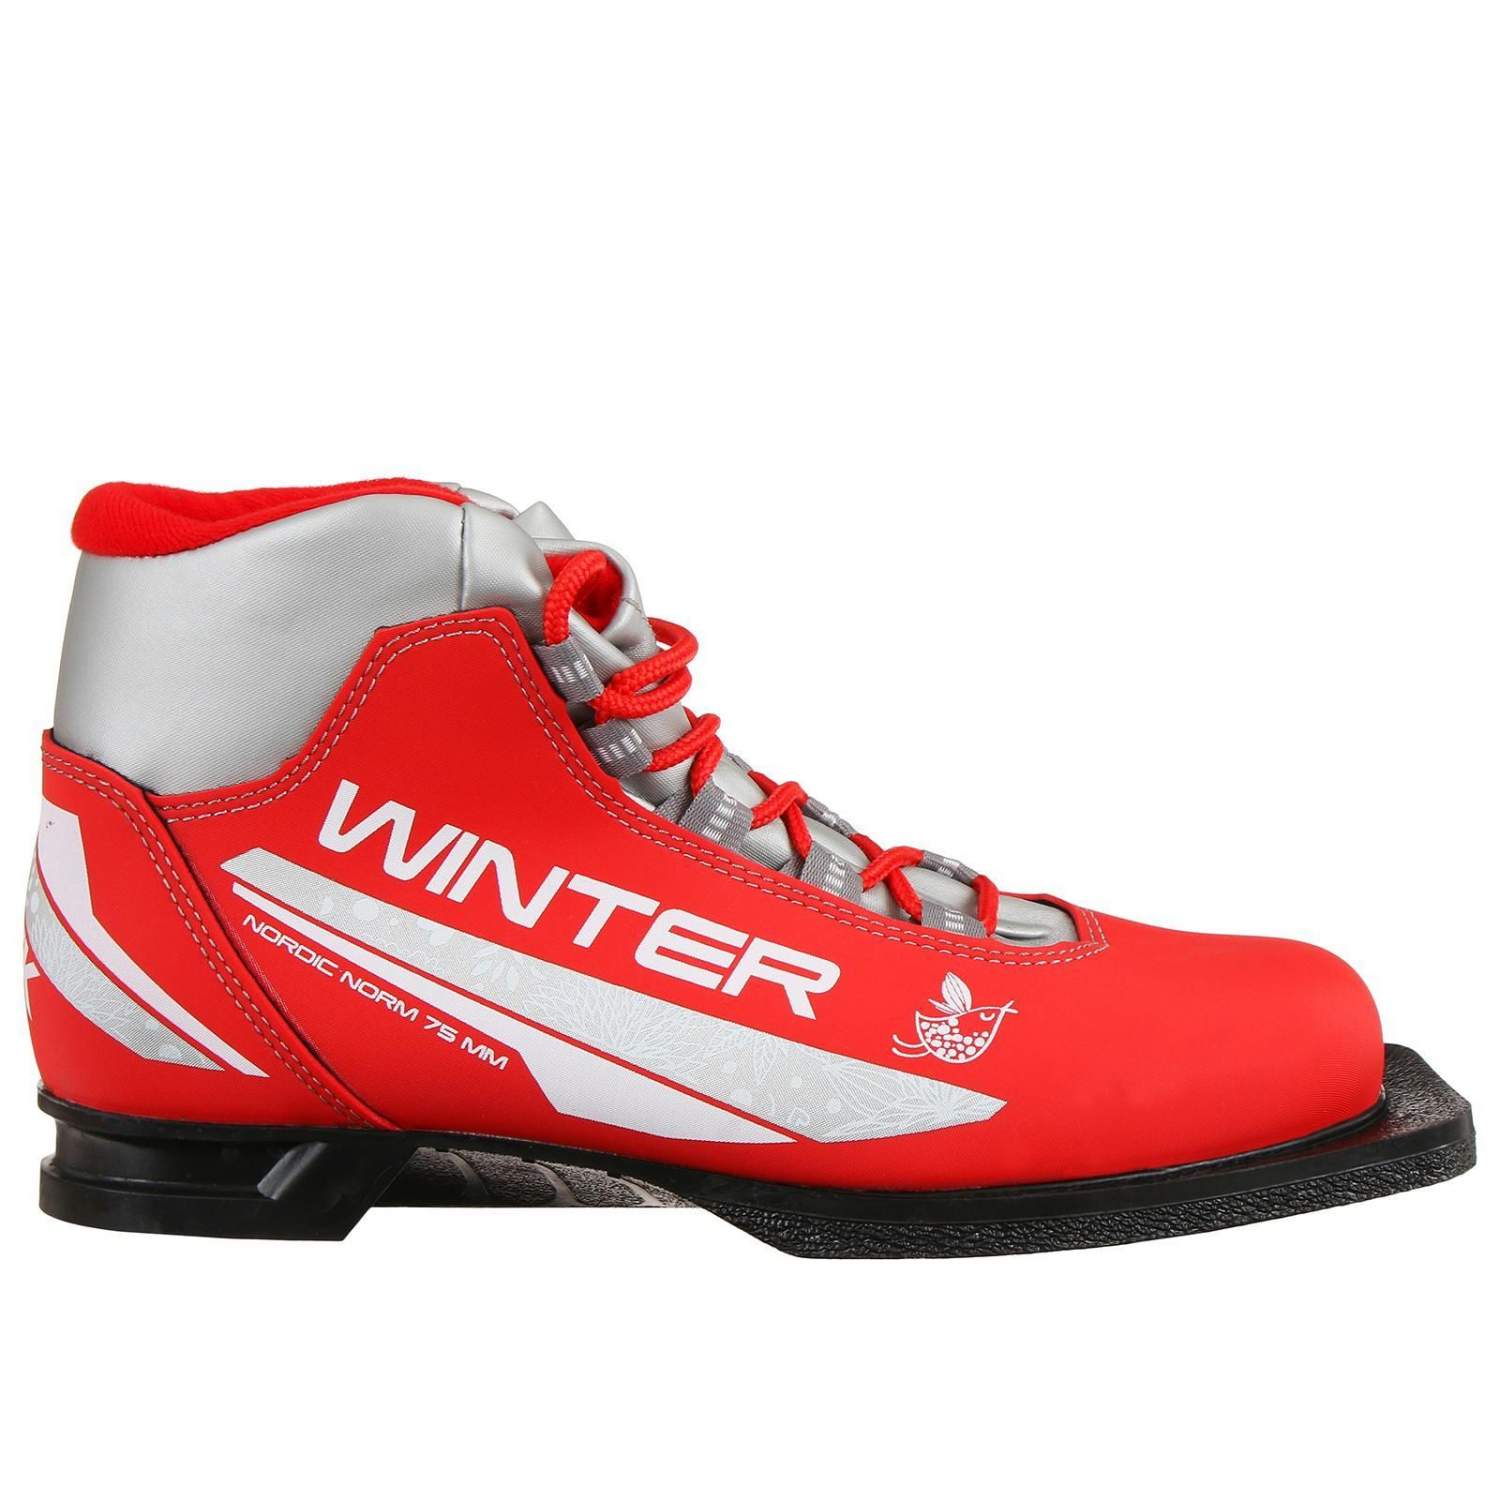 Ботинки лыжные женские TREK Winter 1 NN75, цвет красный, лого серебро,размер 35 - купить в Москве, цены на Мегамаркет